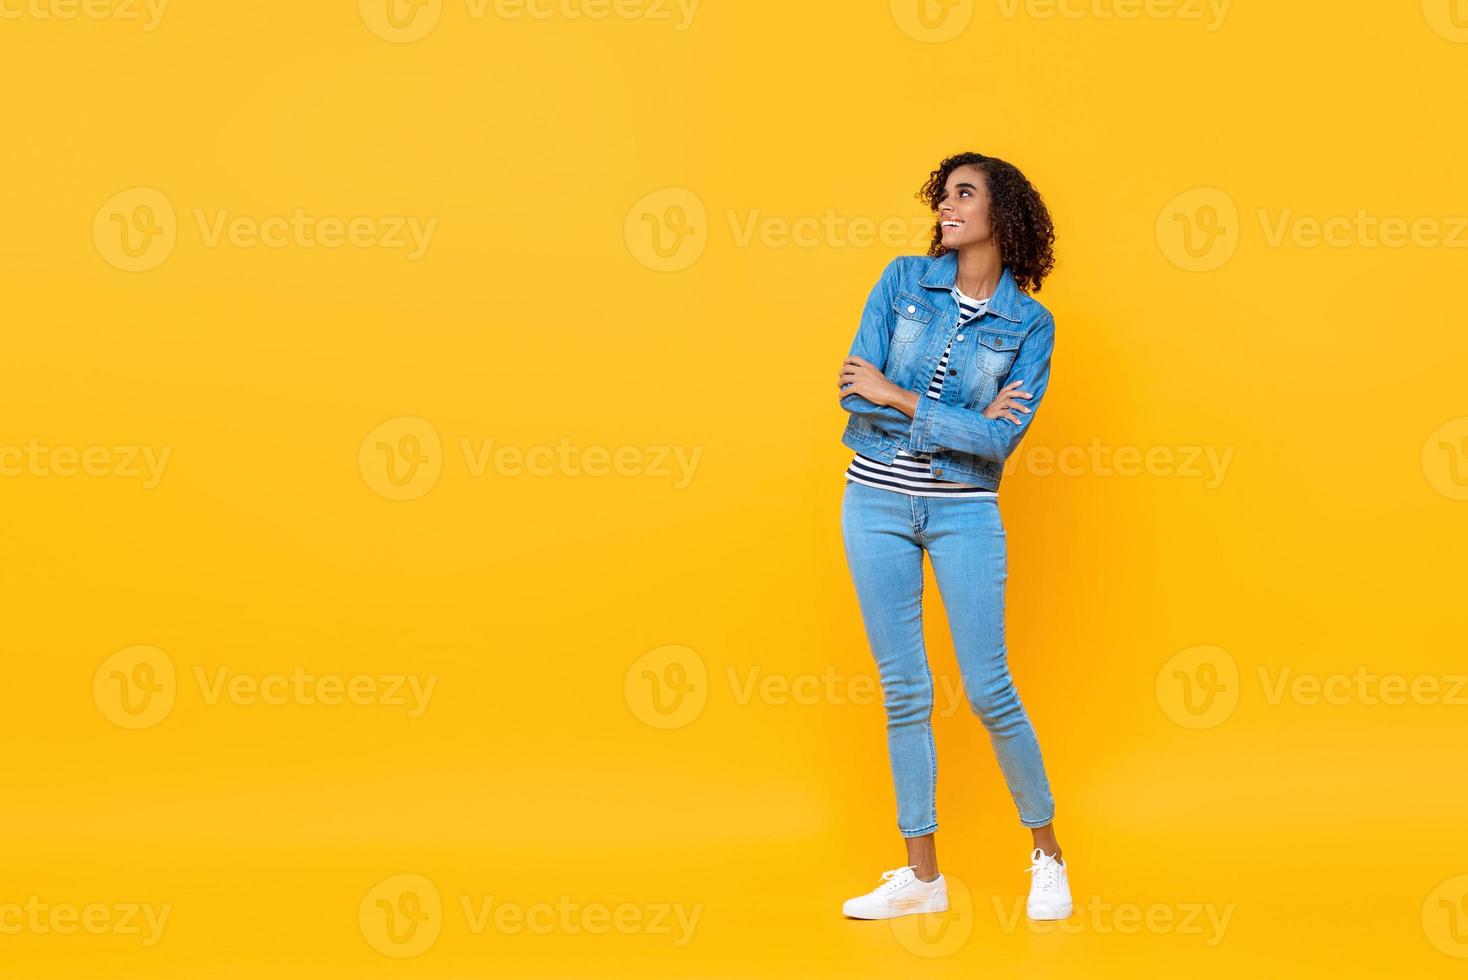 retrato completo de una joven afroamericana sonriente mirando al costado con los brazos cruzados en el fondo amarillo del estudio foto